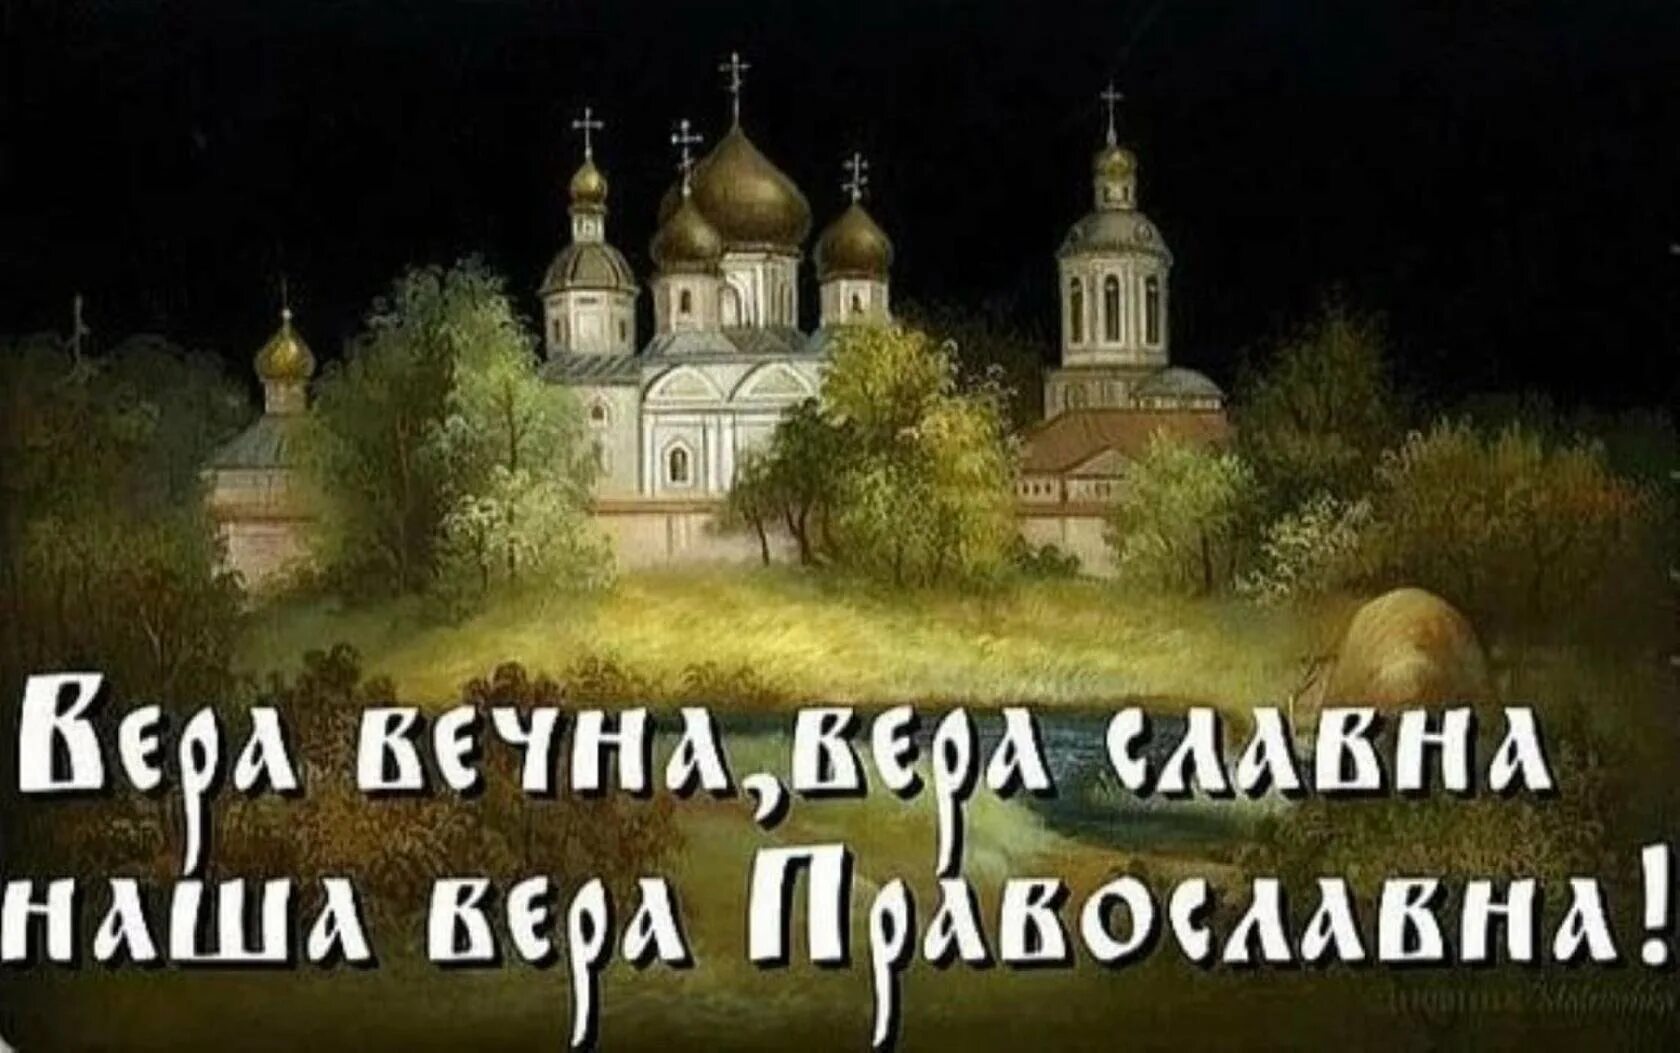 Ой святая русь. Русь Святая православная. О вере славной -вере православной.